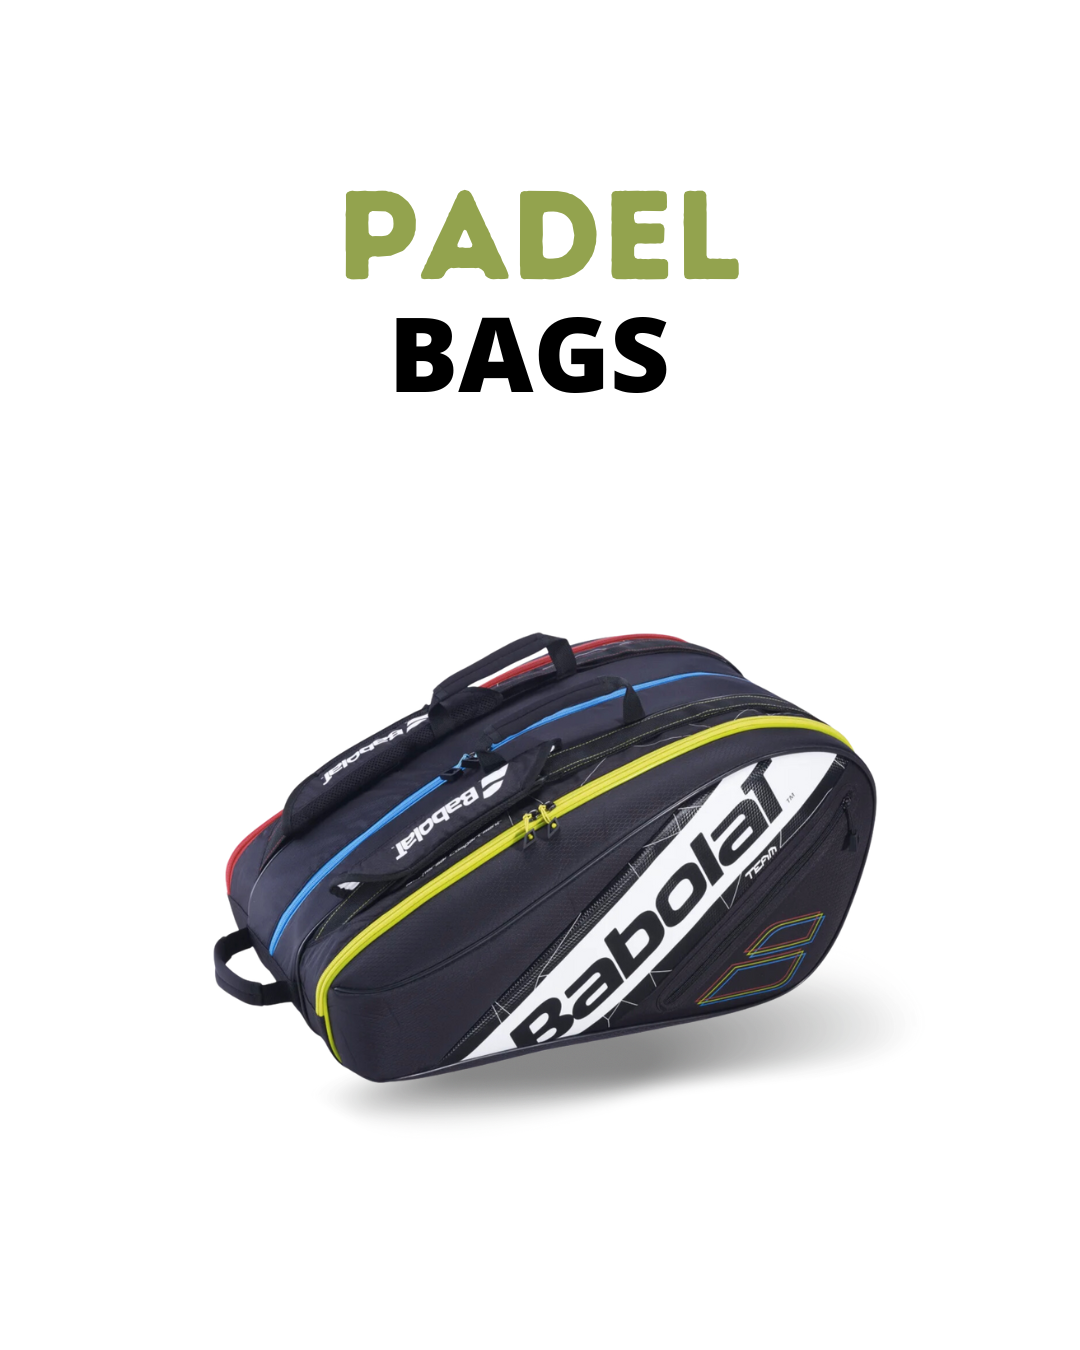 Padel Bags